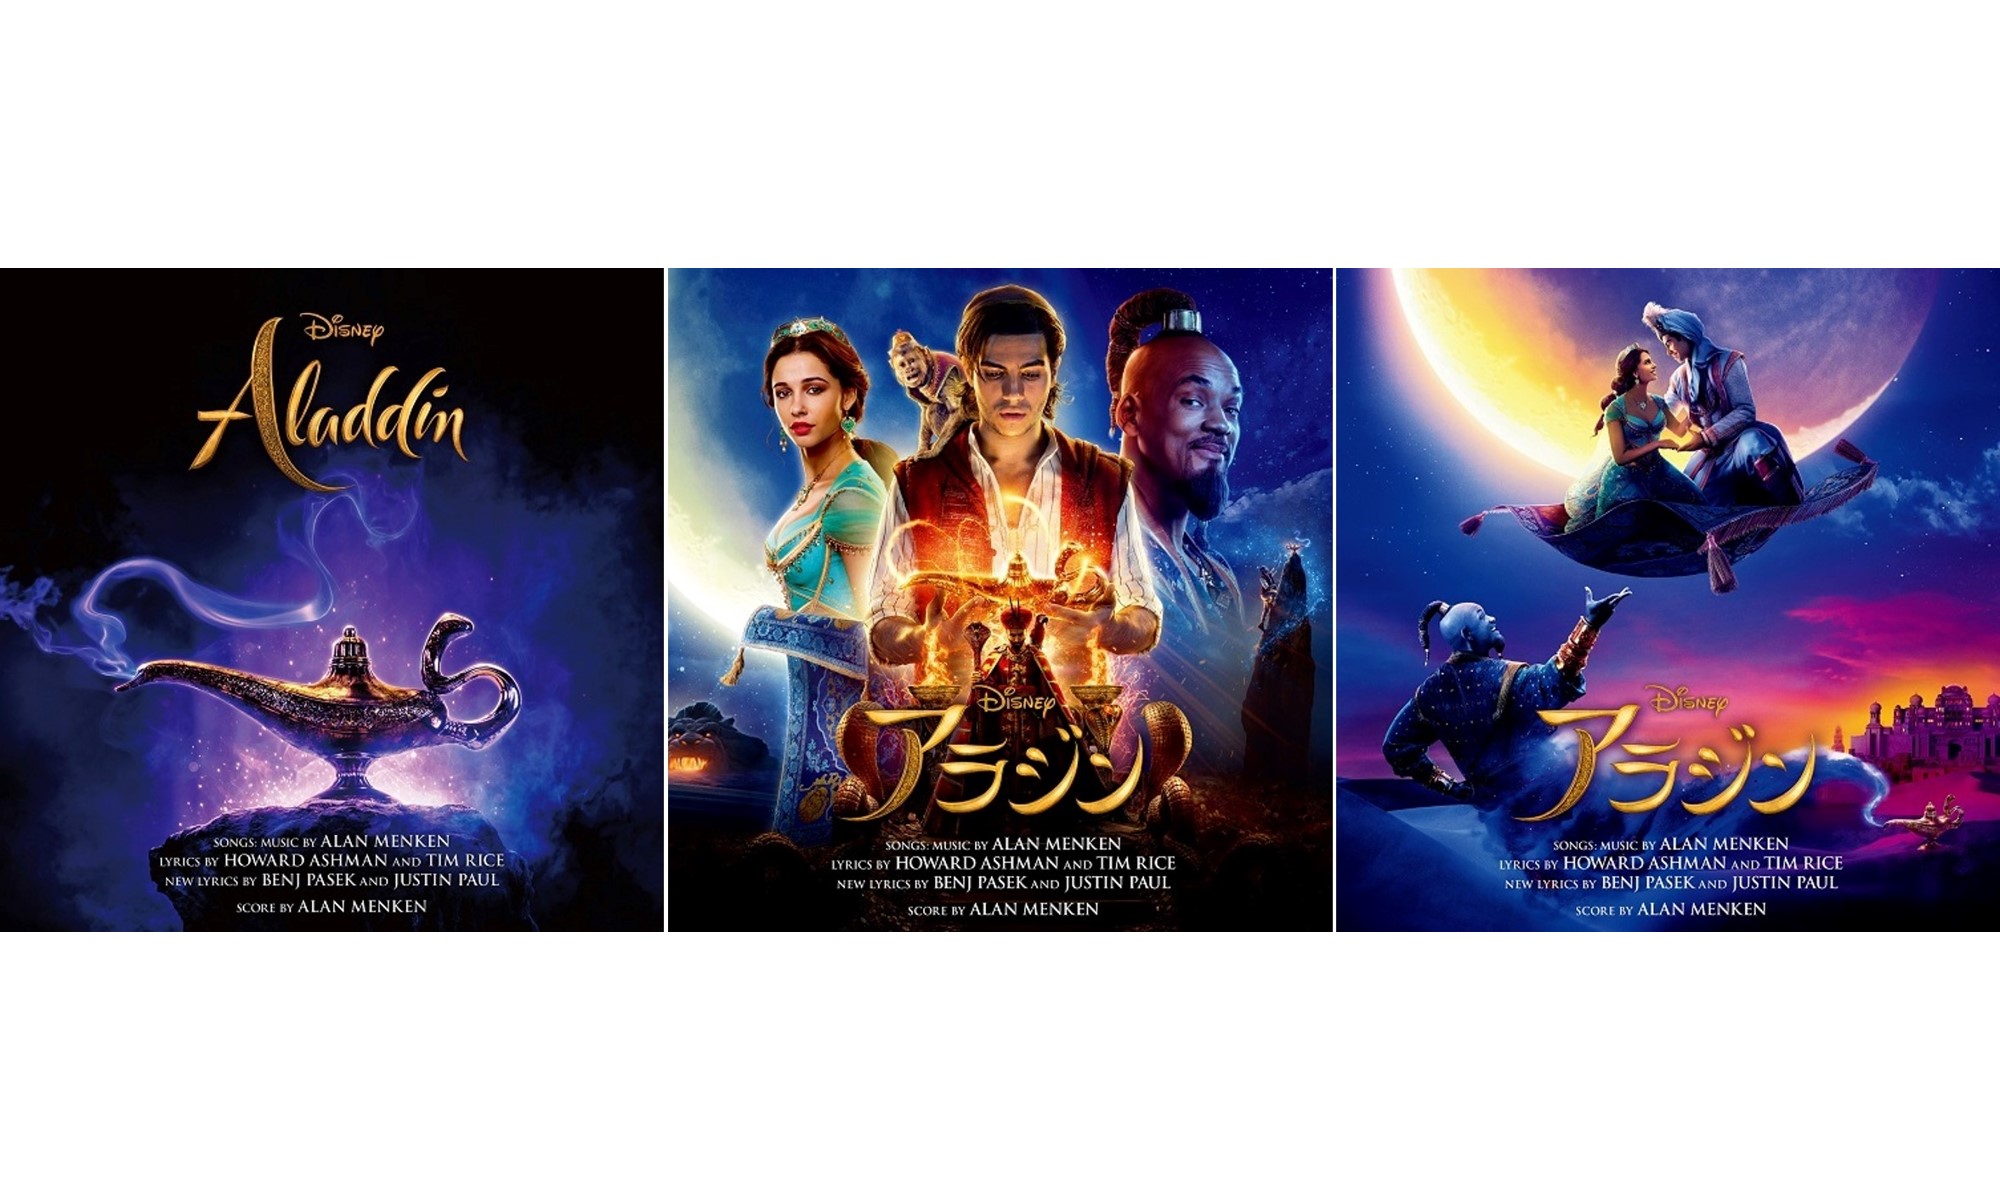 ディズニー映画『アラジン』のサントラが3形態で発売決定。ZAYN＆ジャヴァイア・ワードによる「A Whole New World」のMVも公開